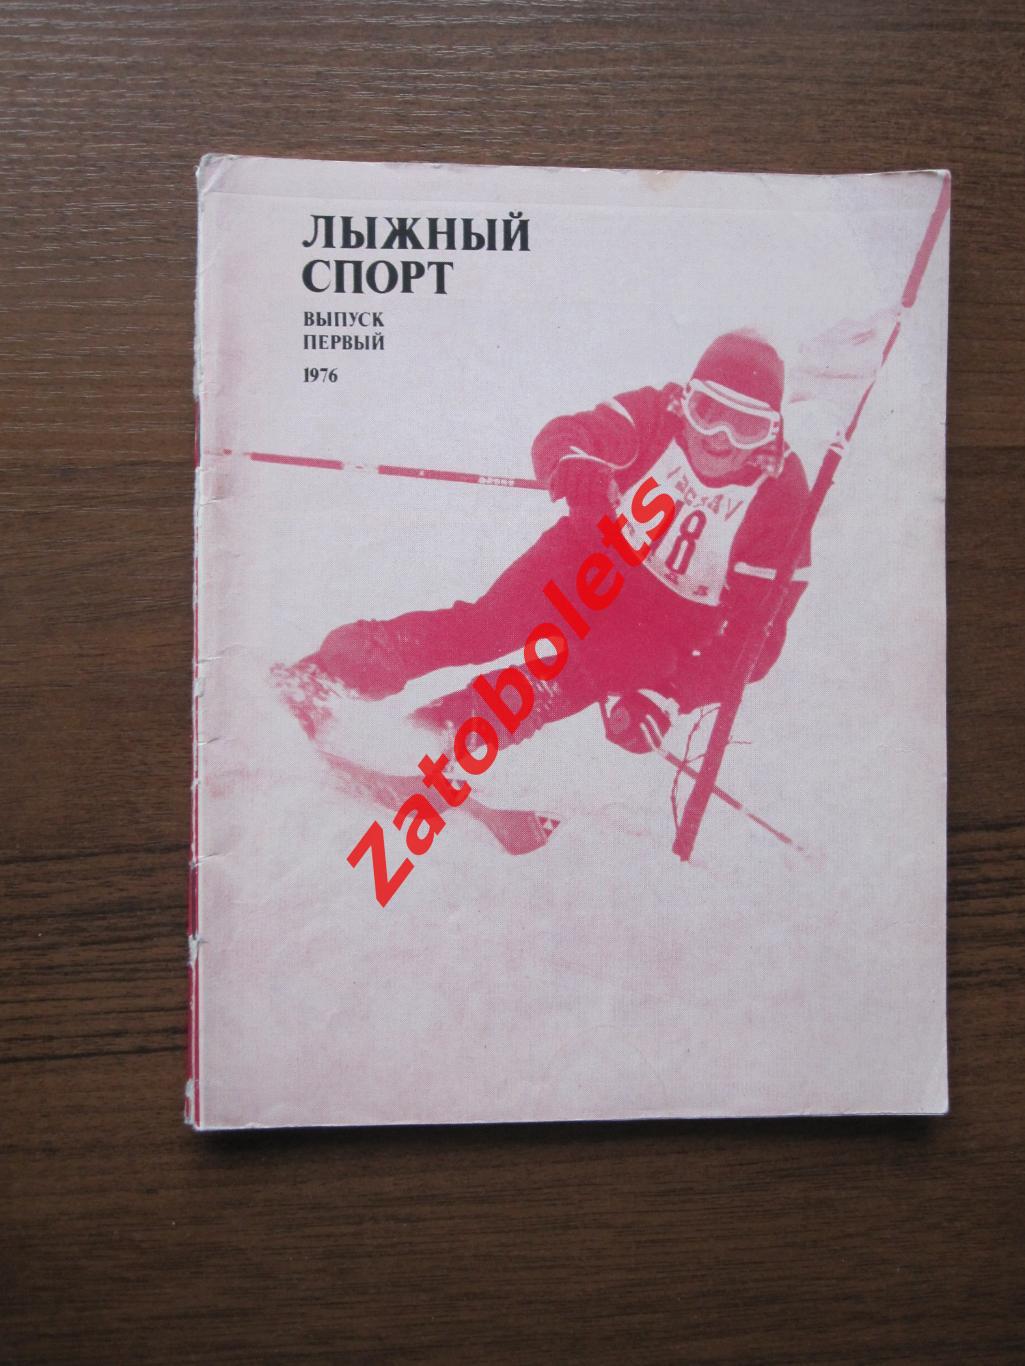 Лыжный спорт 1977 Первый выпуск ФиС